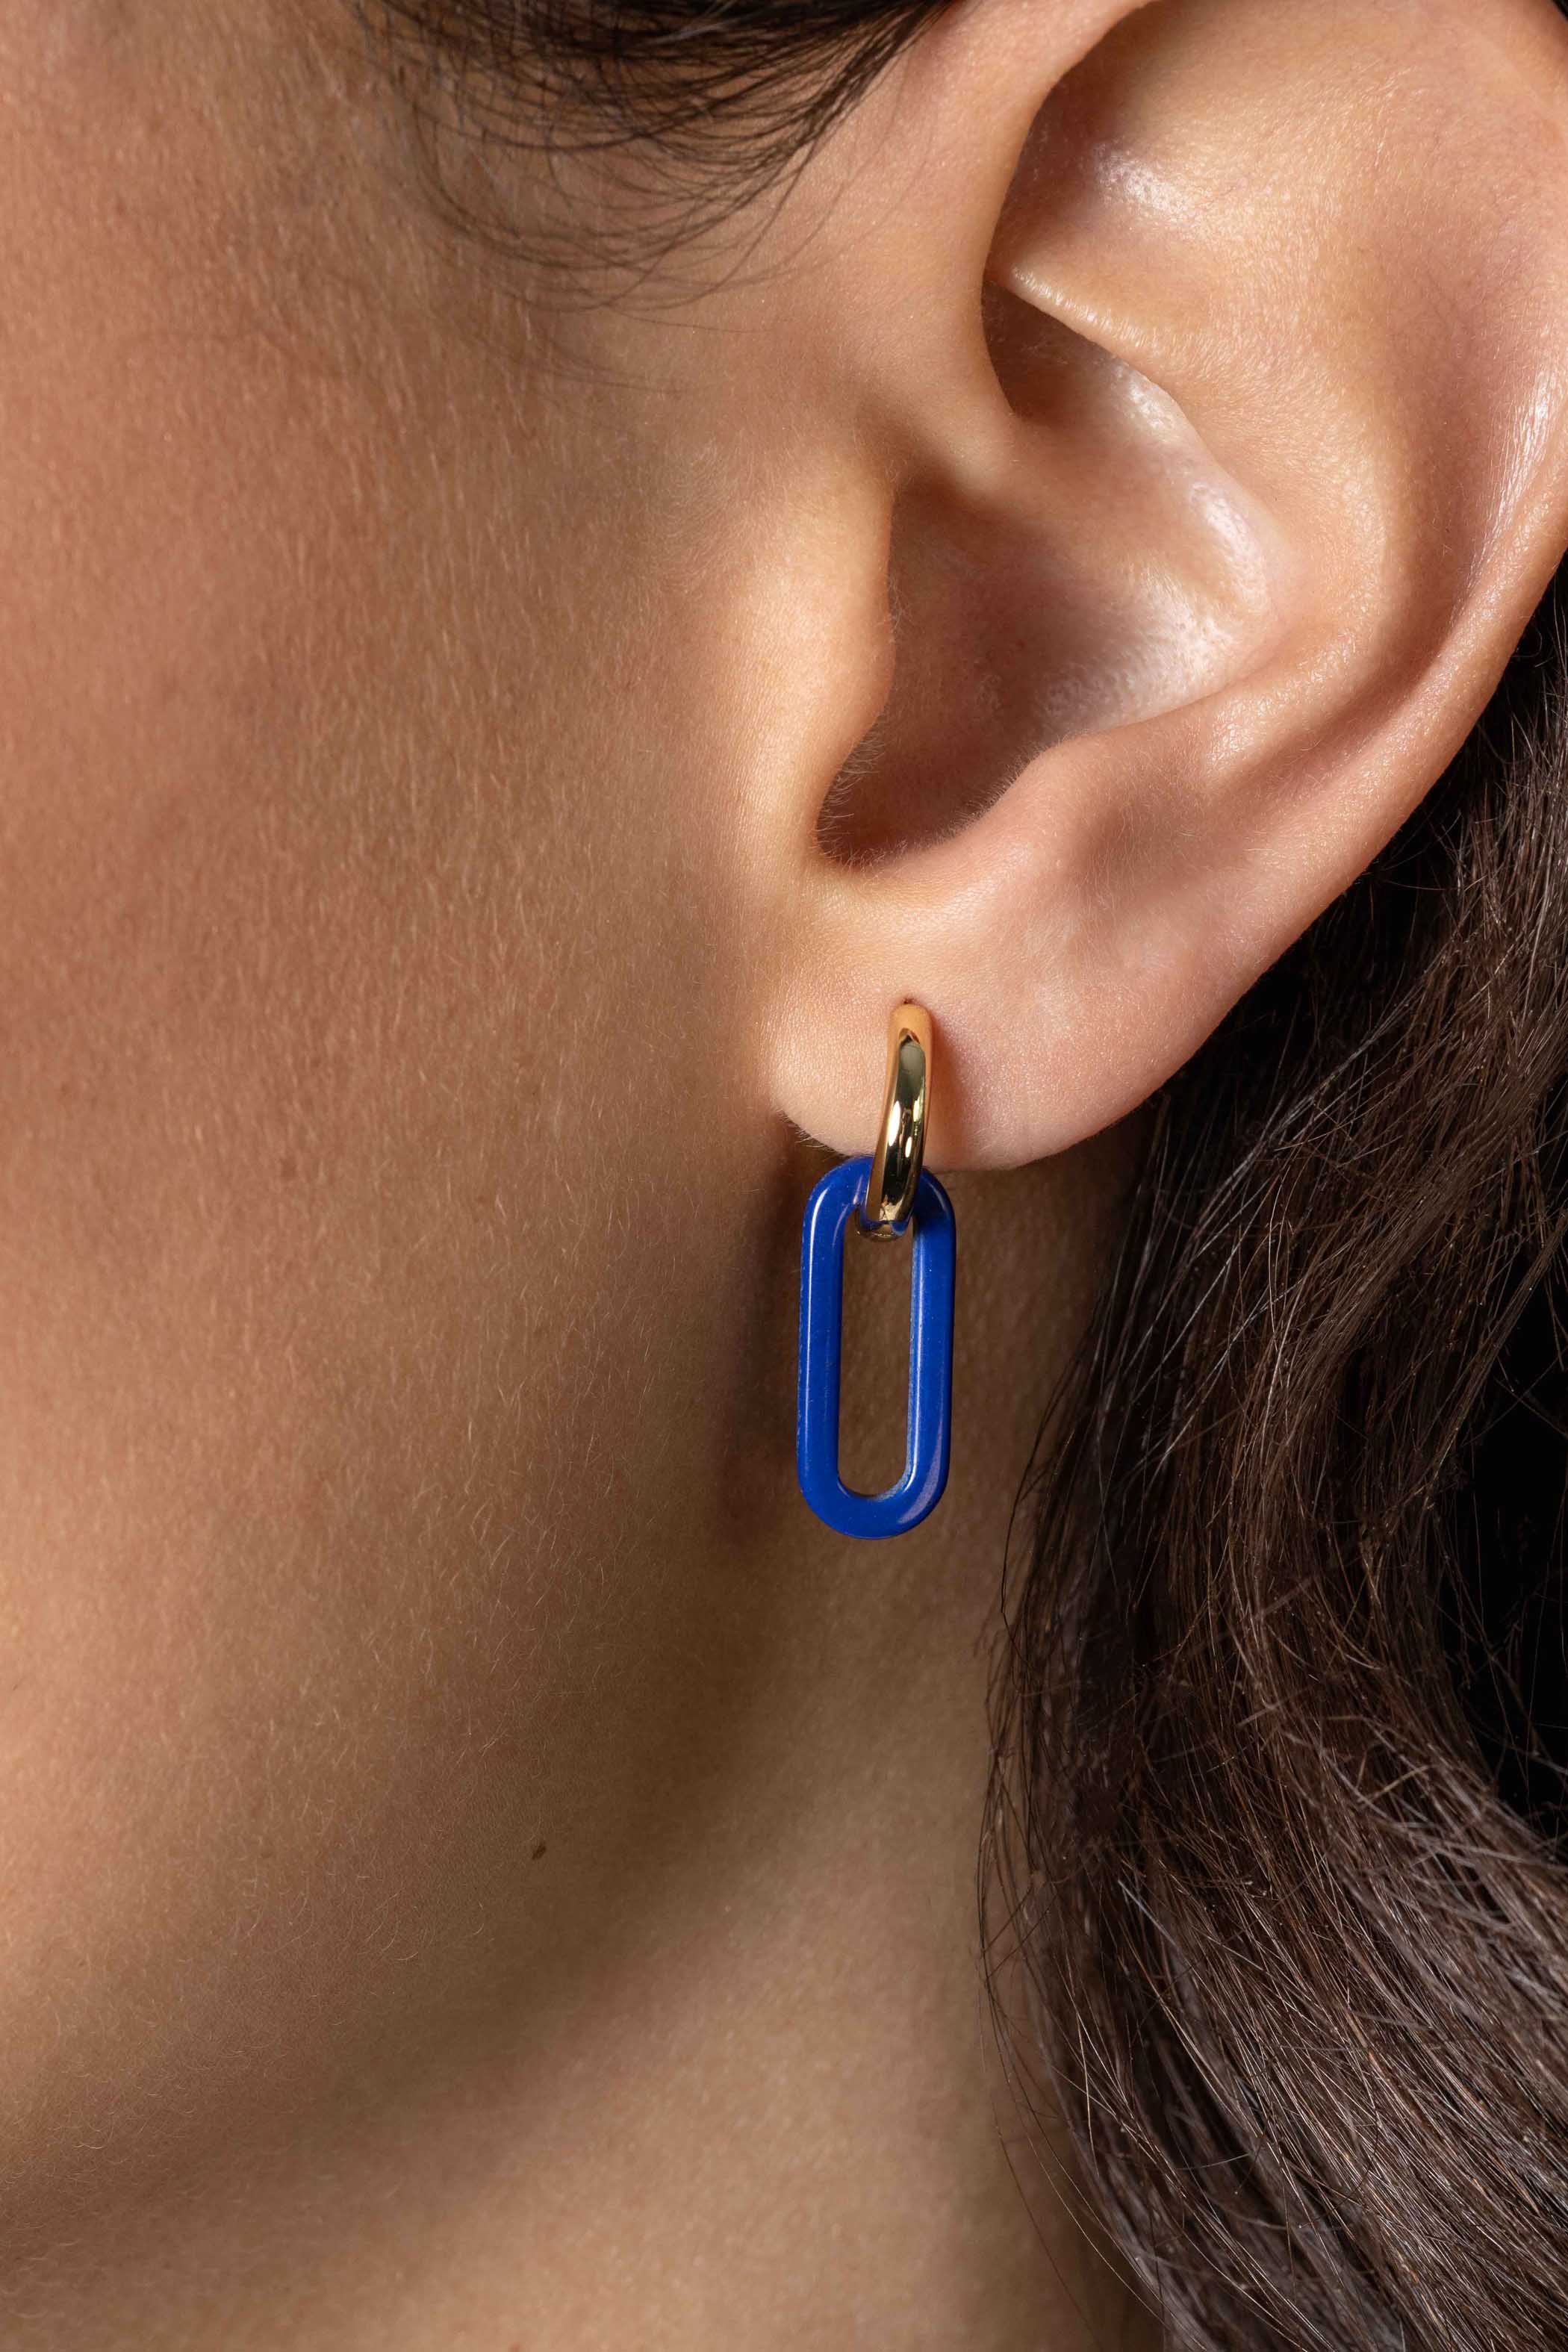 19mm ZINZI Oval Earrings Pendants in Trendy Lapis Lazuli Blue ZICH2455L (excl. hoop earrings)